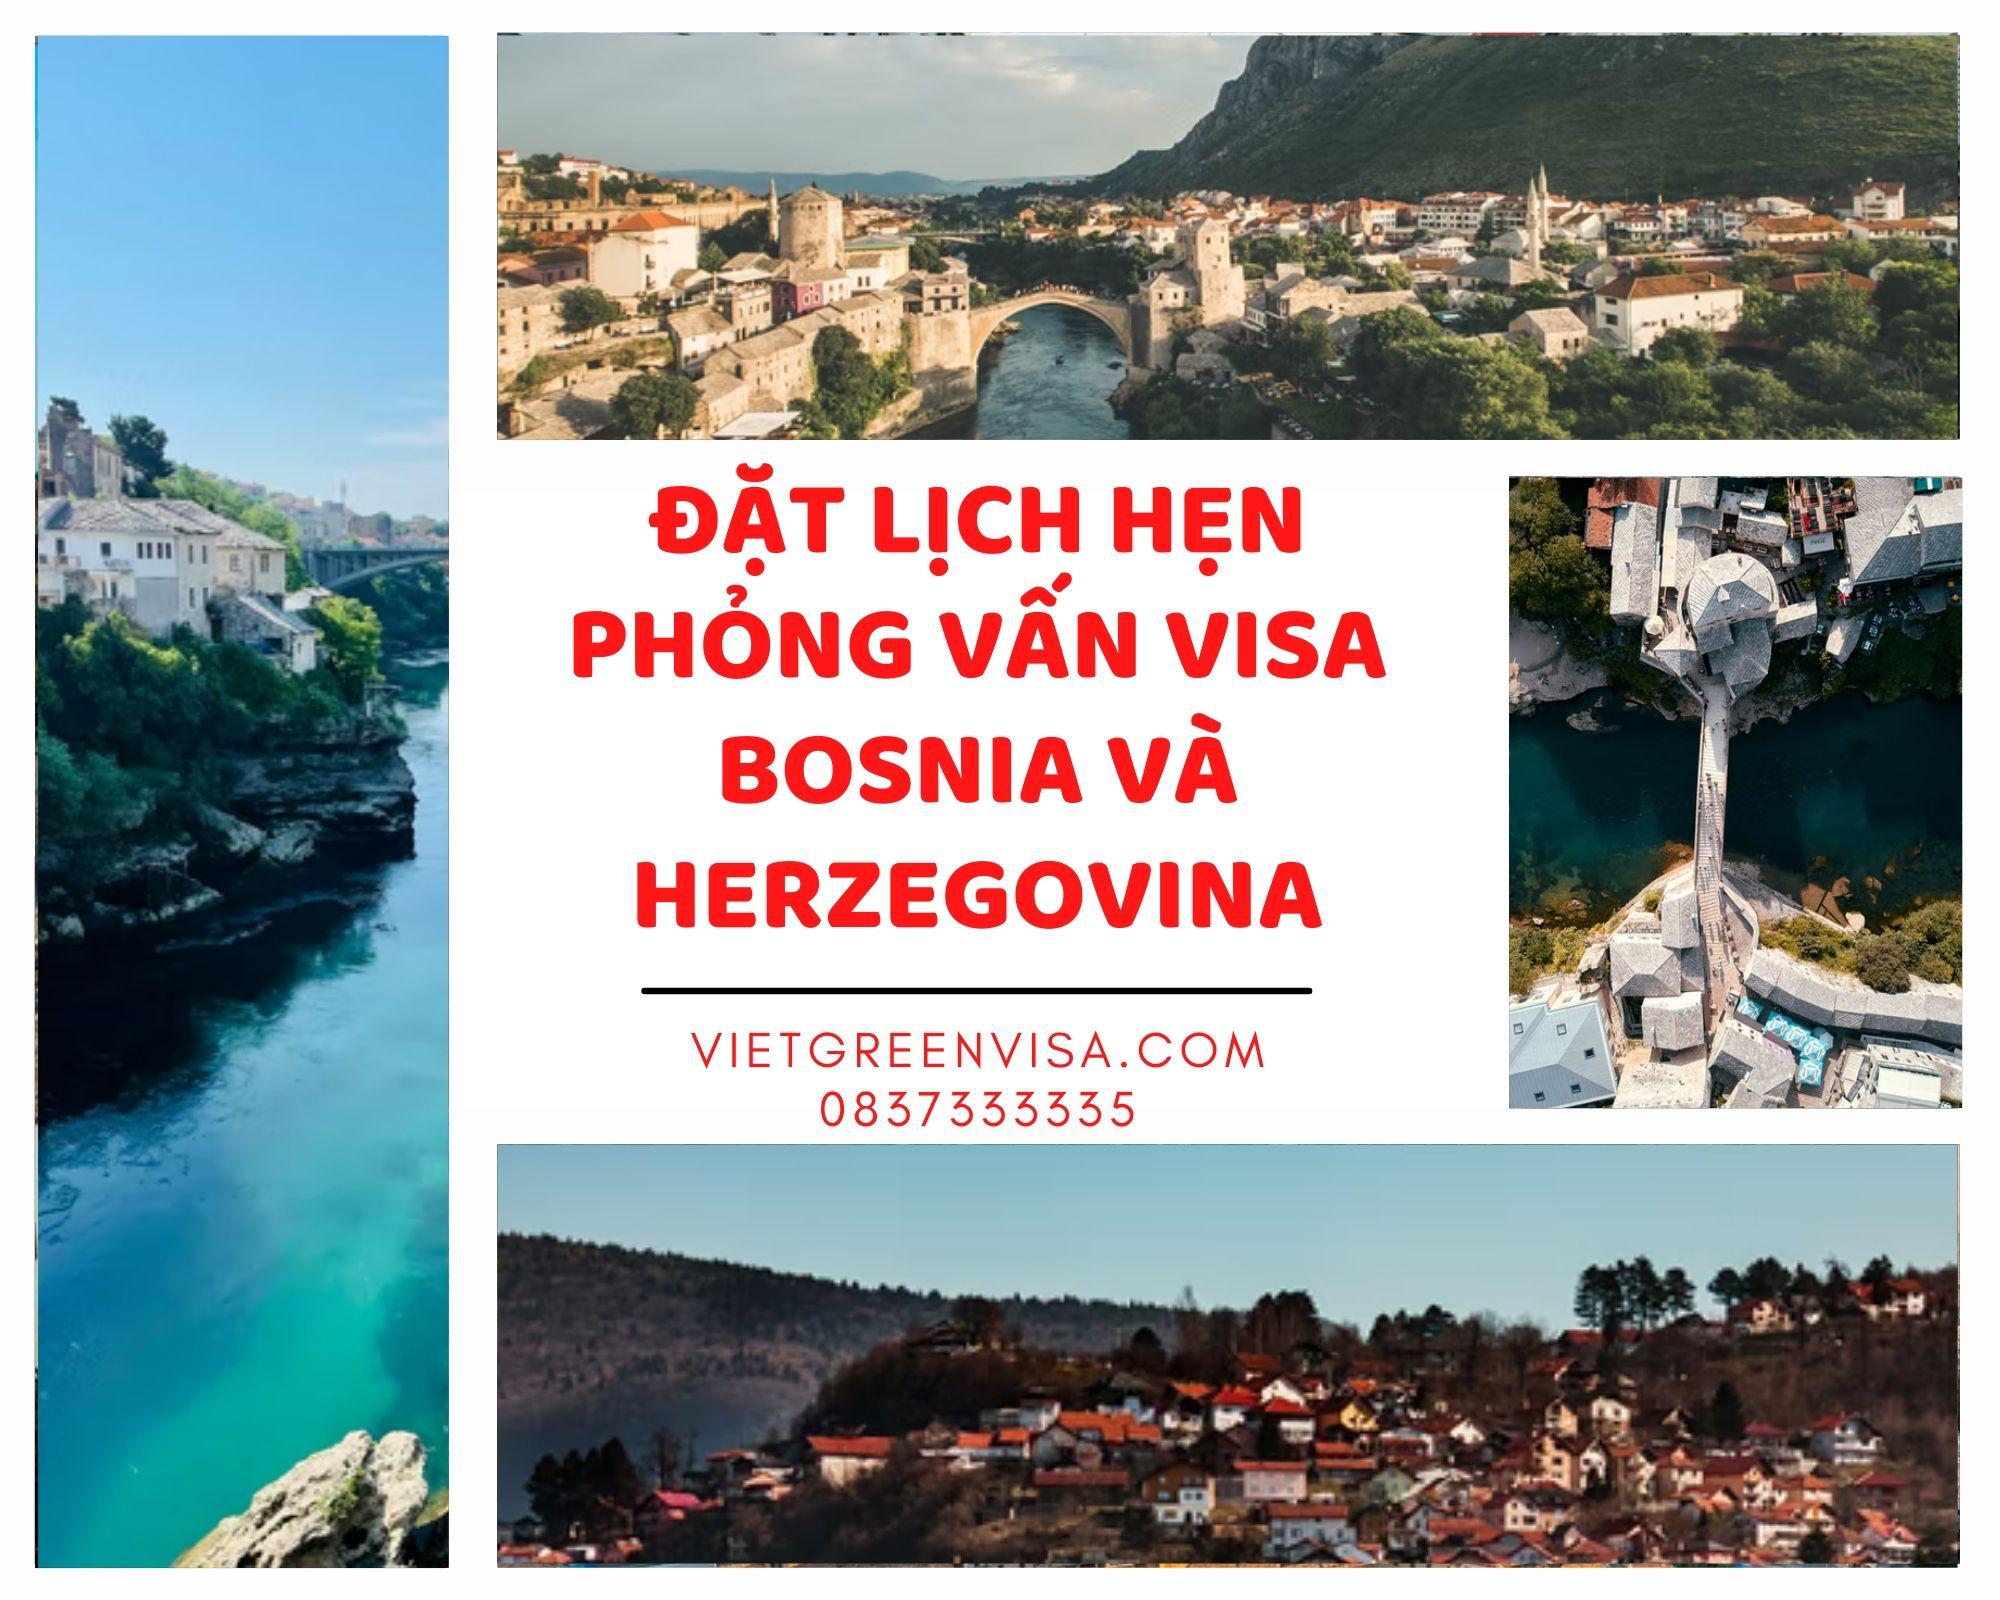 Dịch vụ đặt lịch hẹn phỏng vấn visa Bosnia và Herzegovina